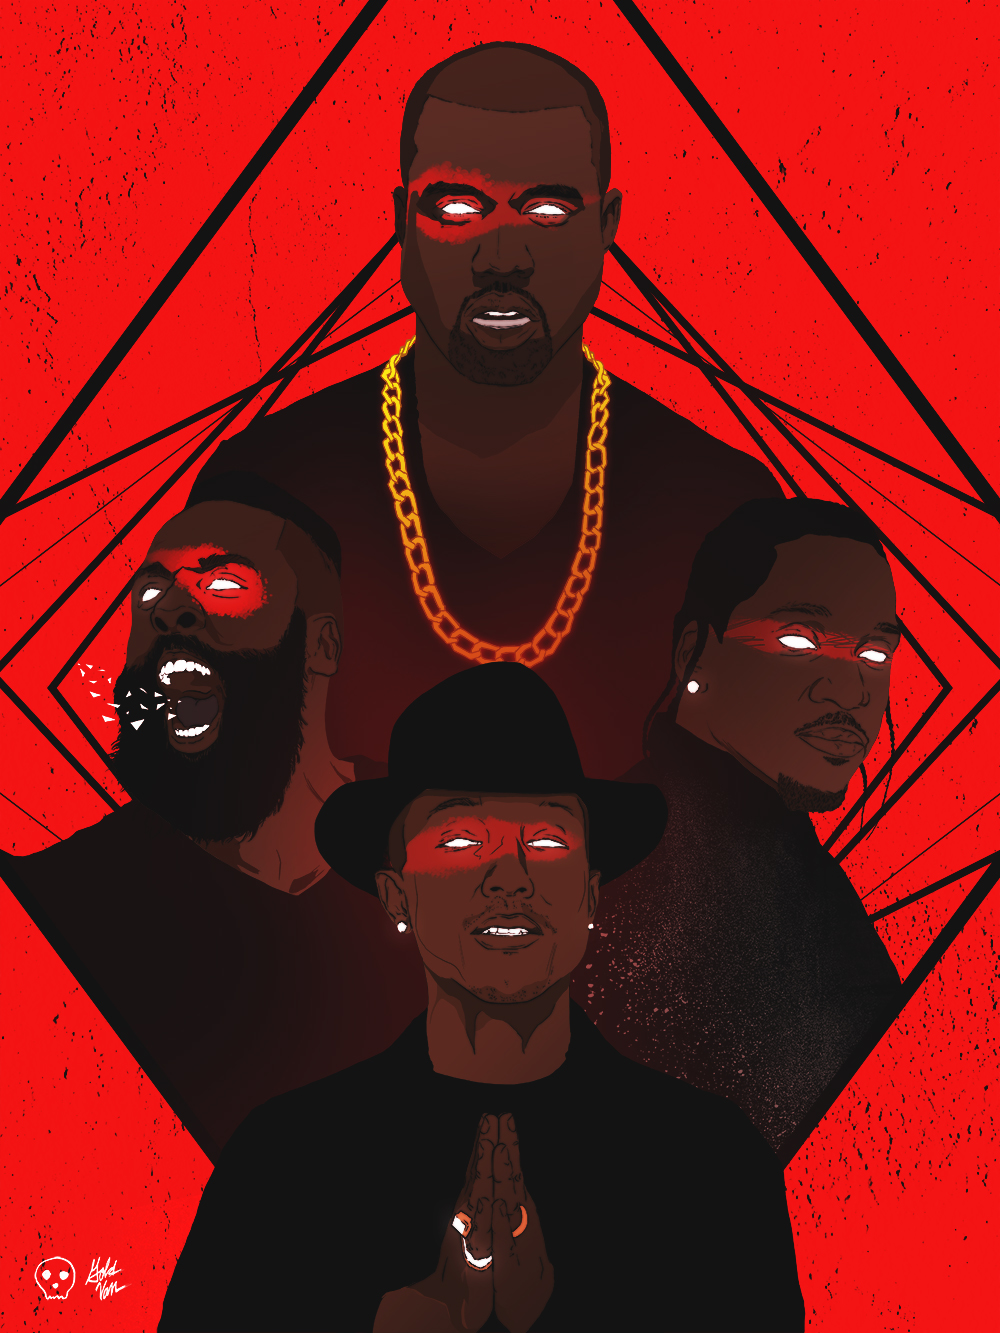 James Harden x Kanye West x Pharrell Williams x Pusha T Illustration